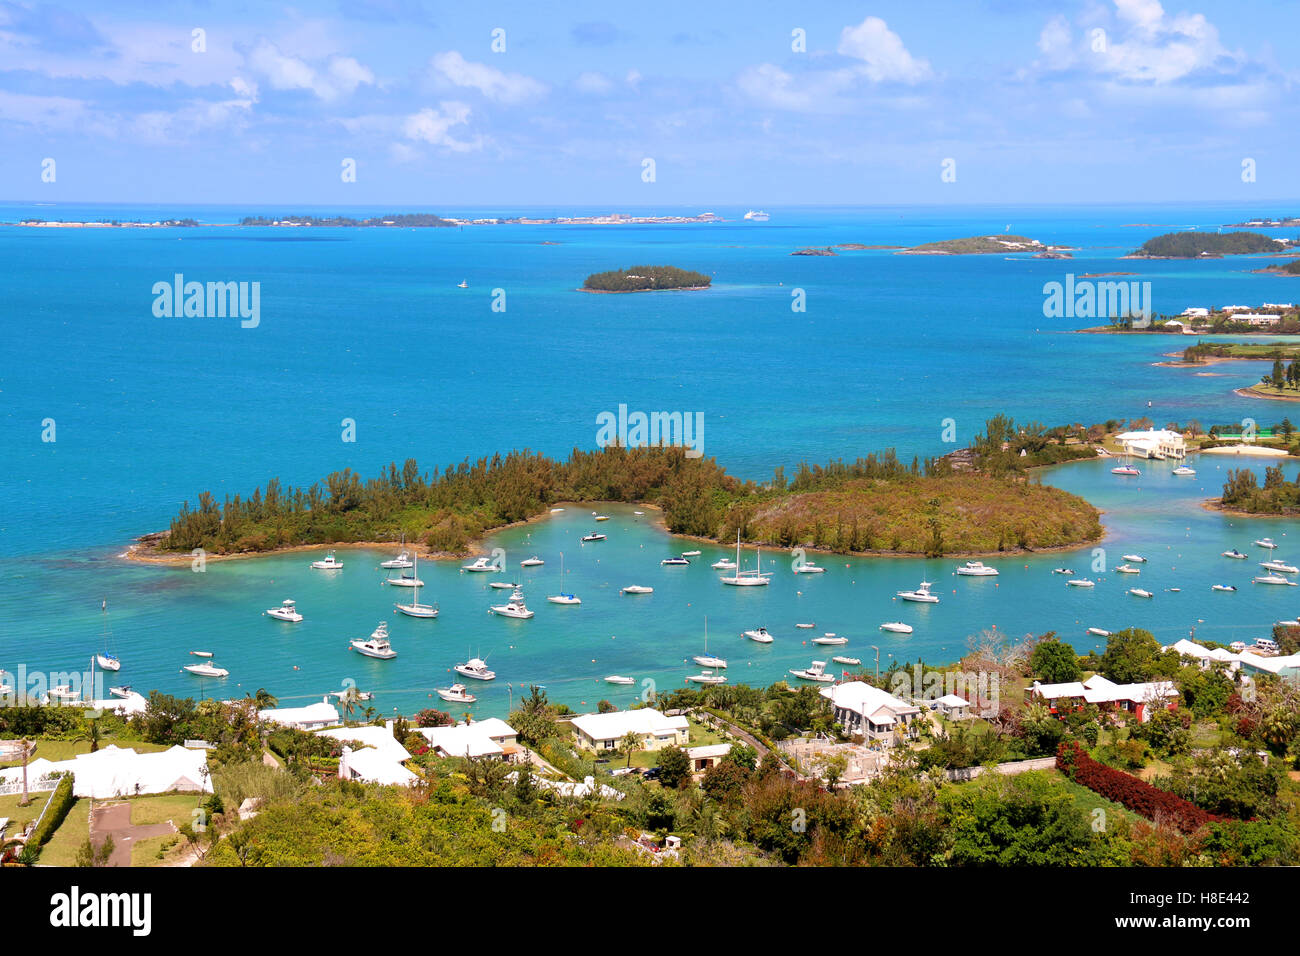 Les Bermudes paysage tropical Vue de dessus, St Anne's, les Bermudes. Banque D'Images